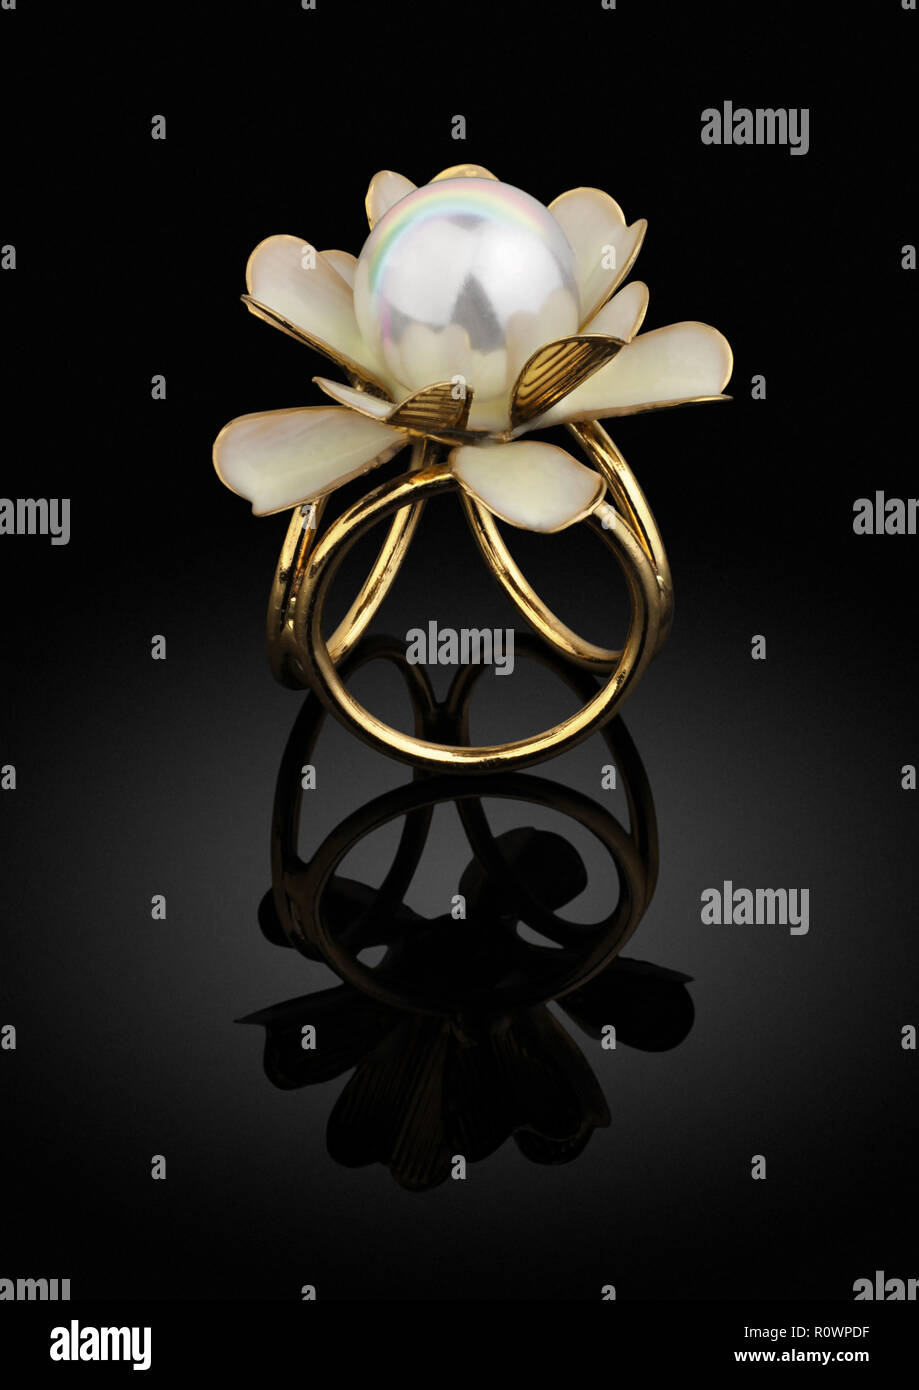 Schmuck goldener Ring mit Perle auf schwarzem Hintergrund Stockfoto